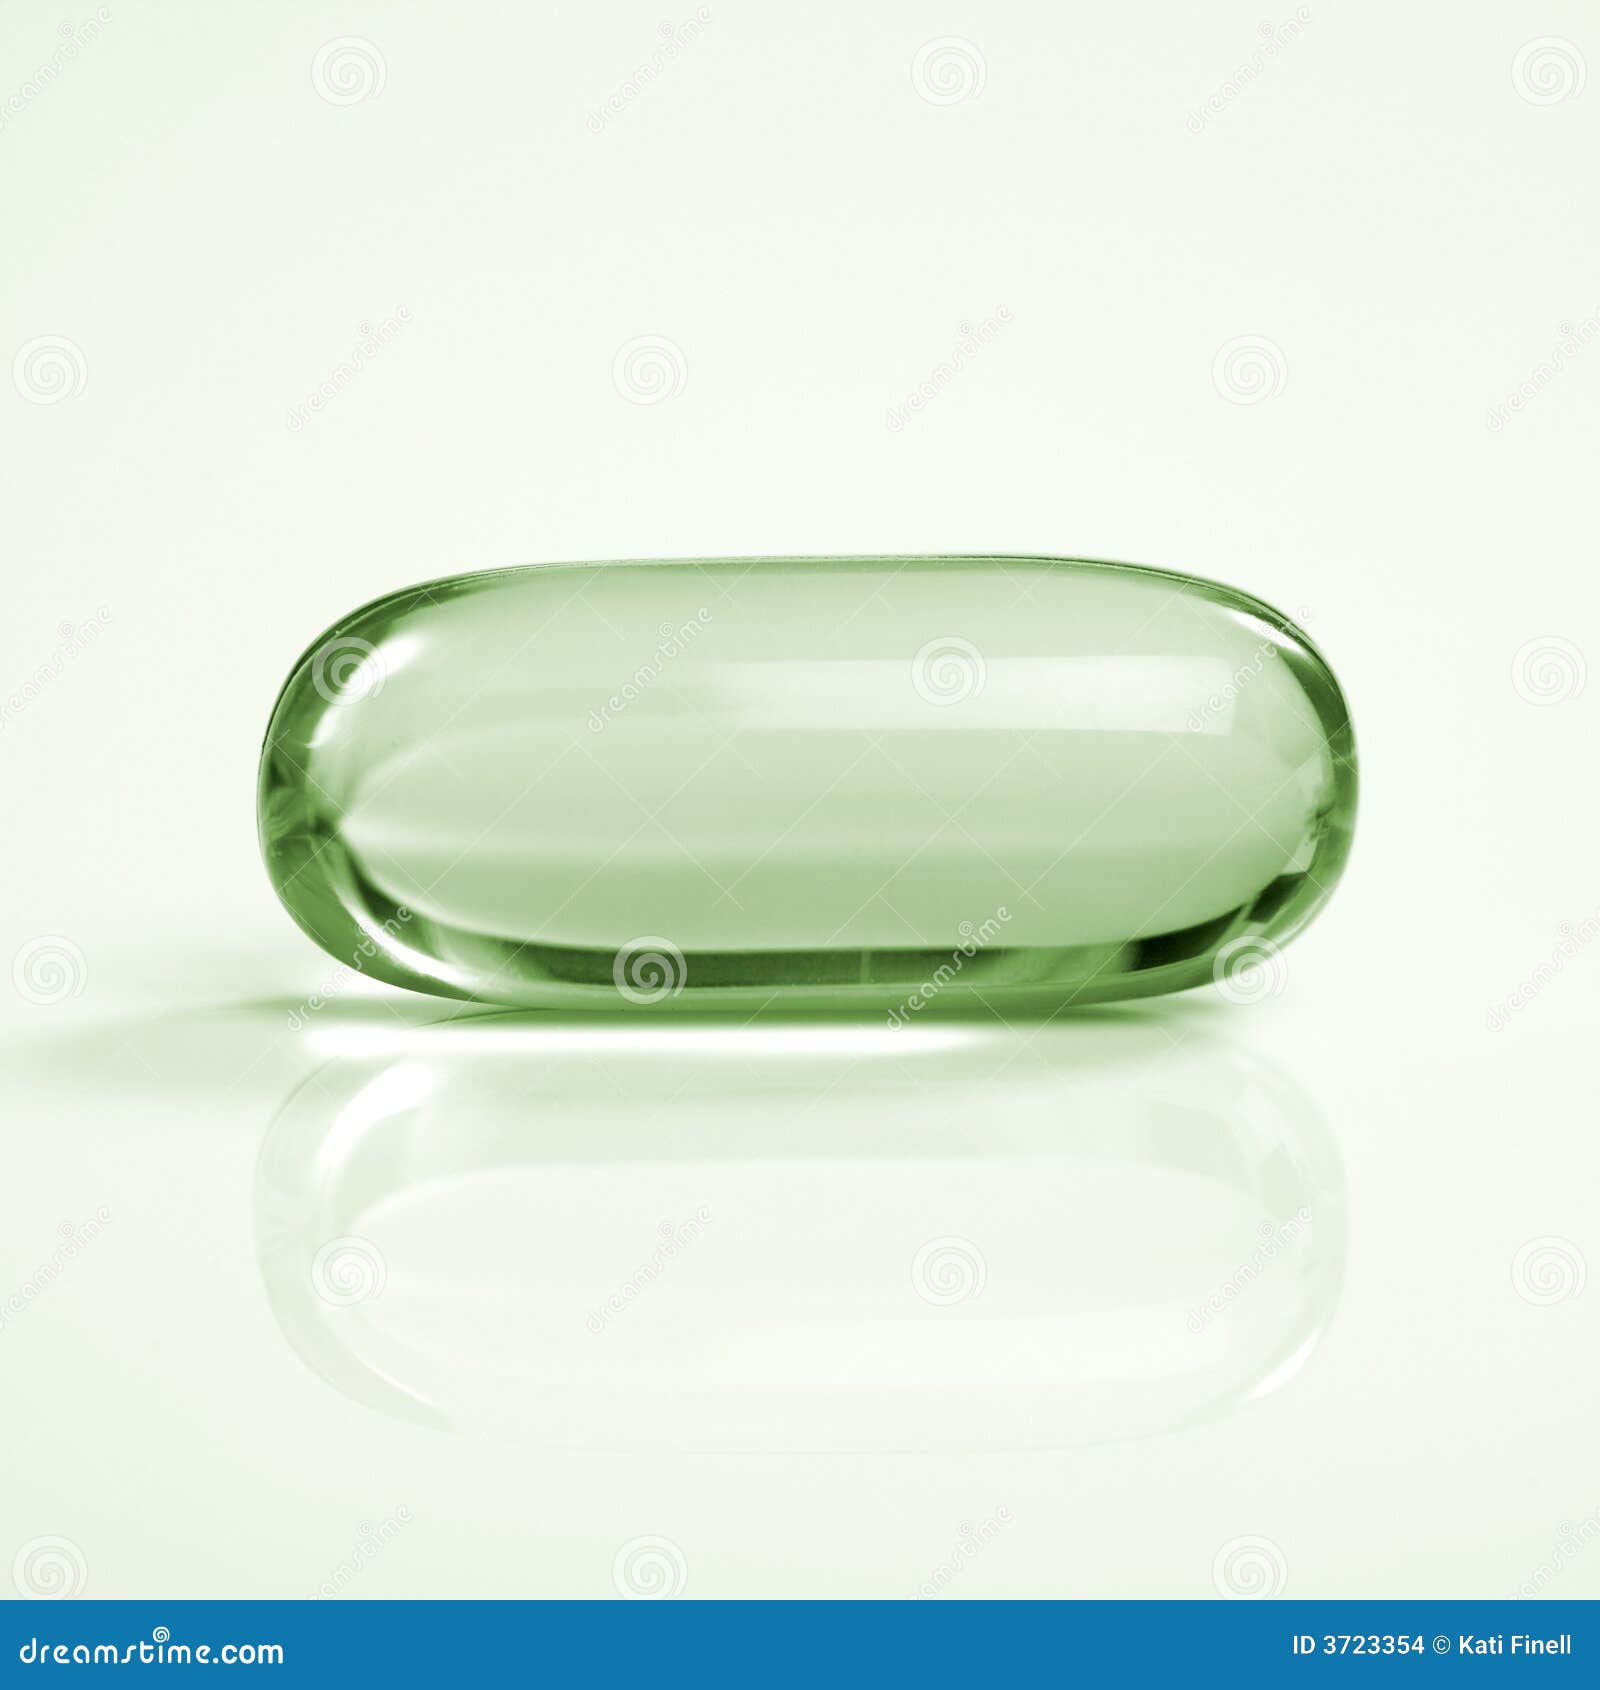 medicine capsule